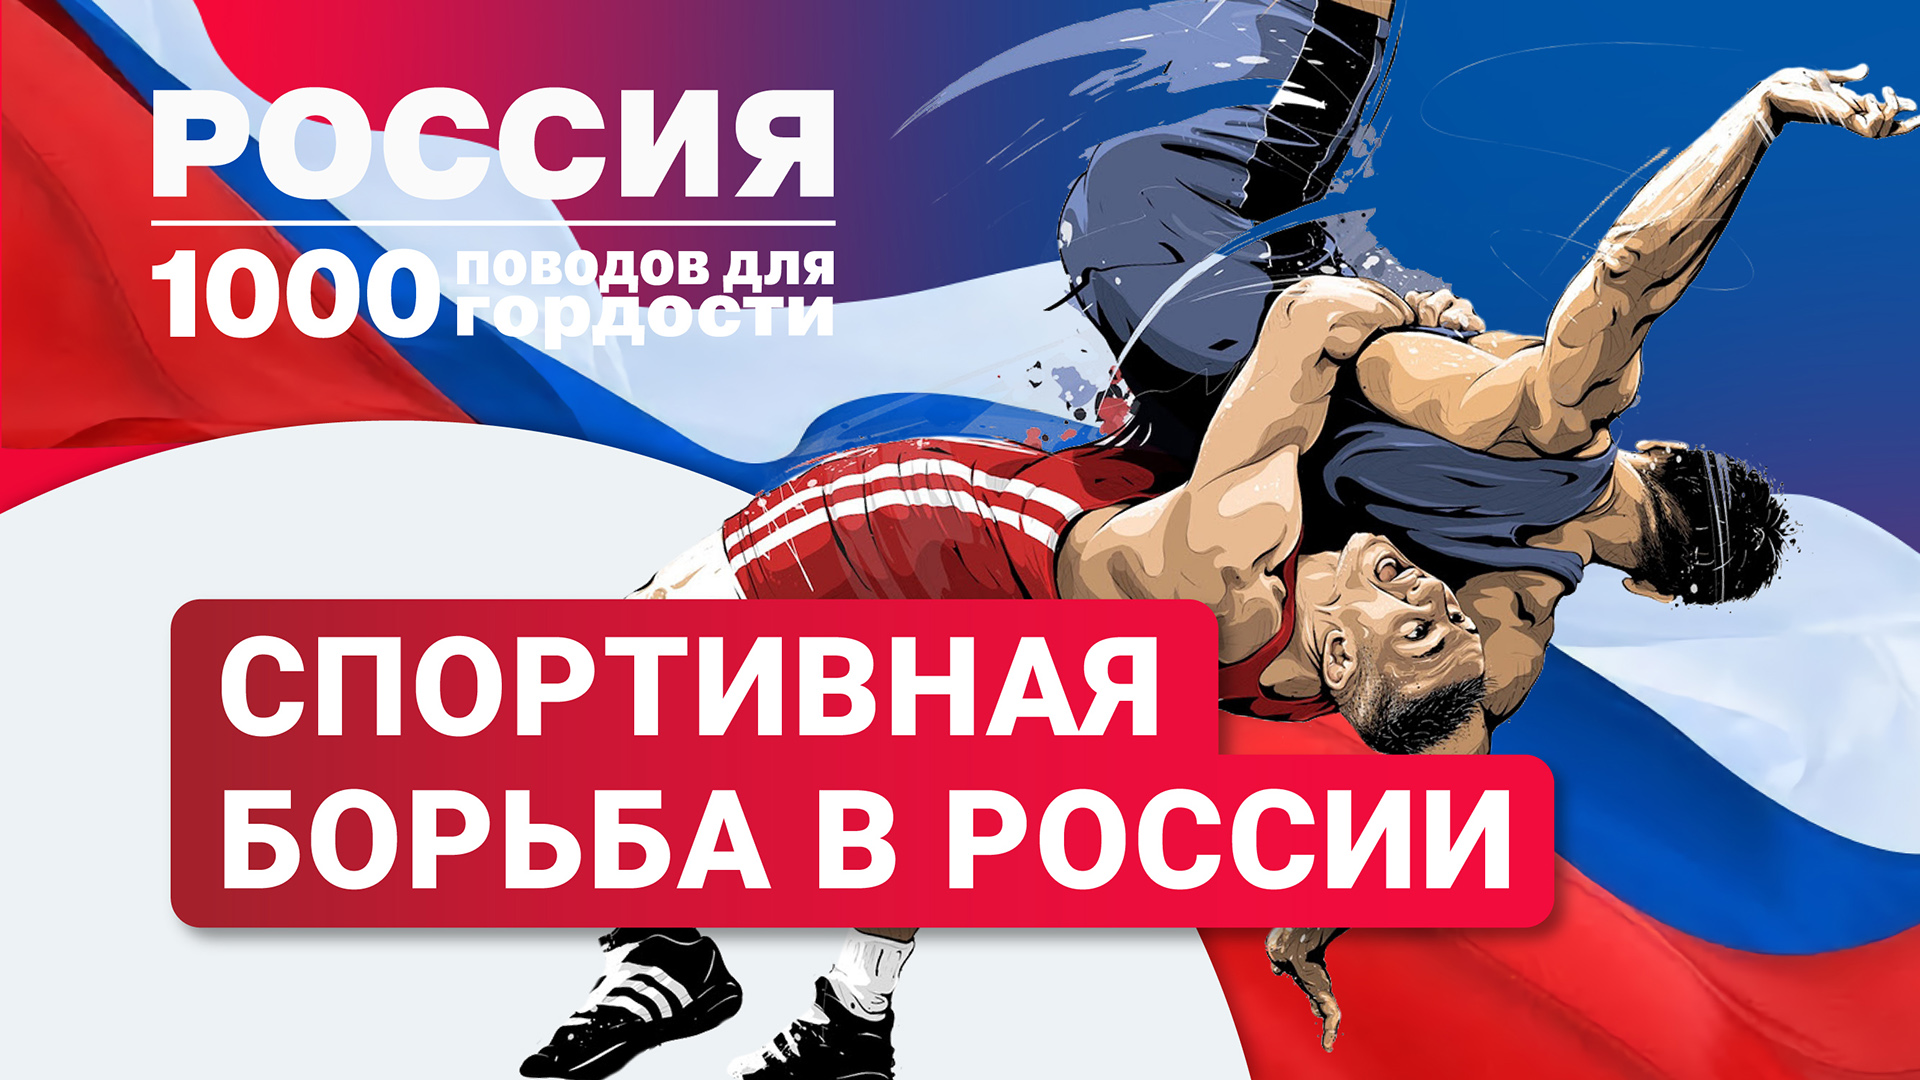 Спортивная борьба в России